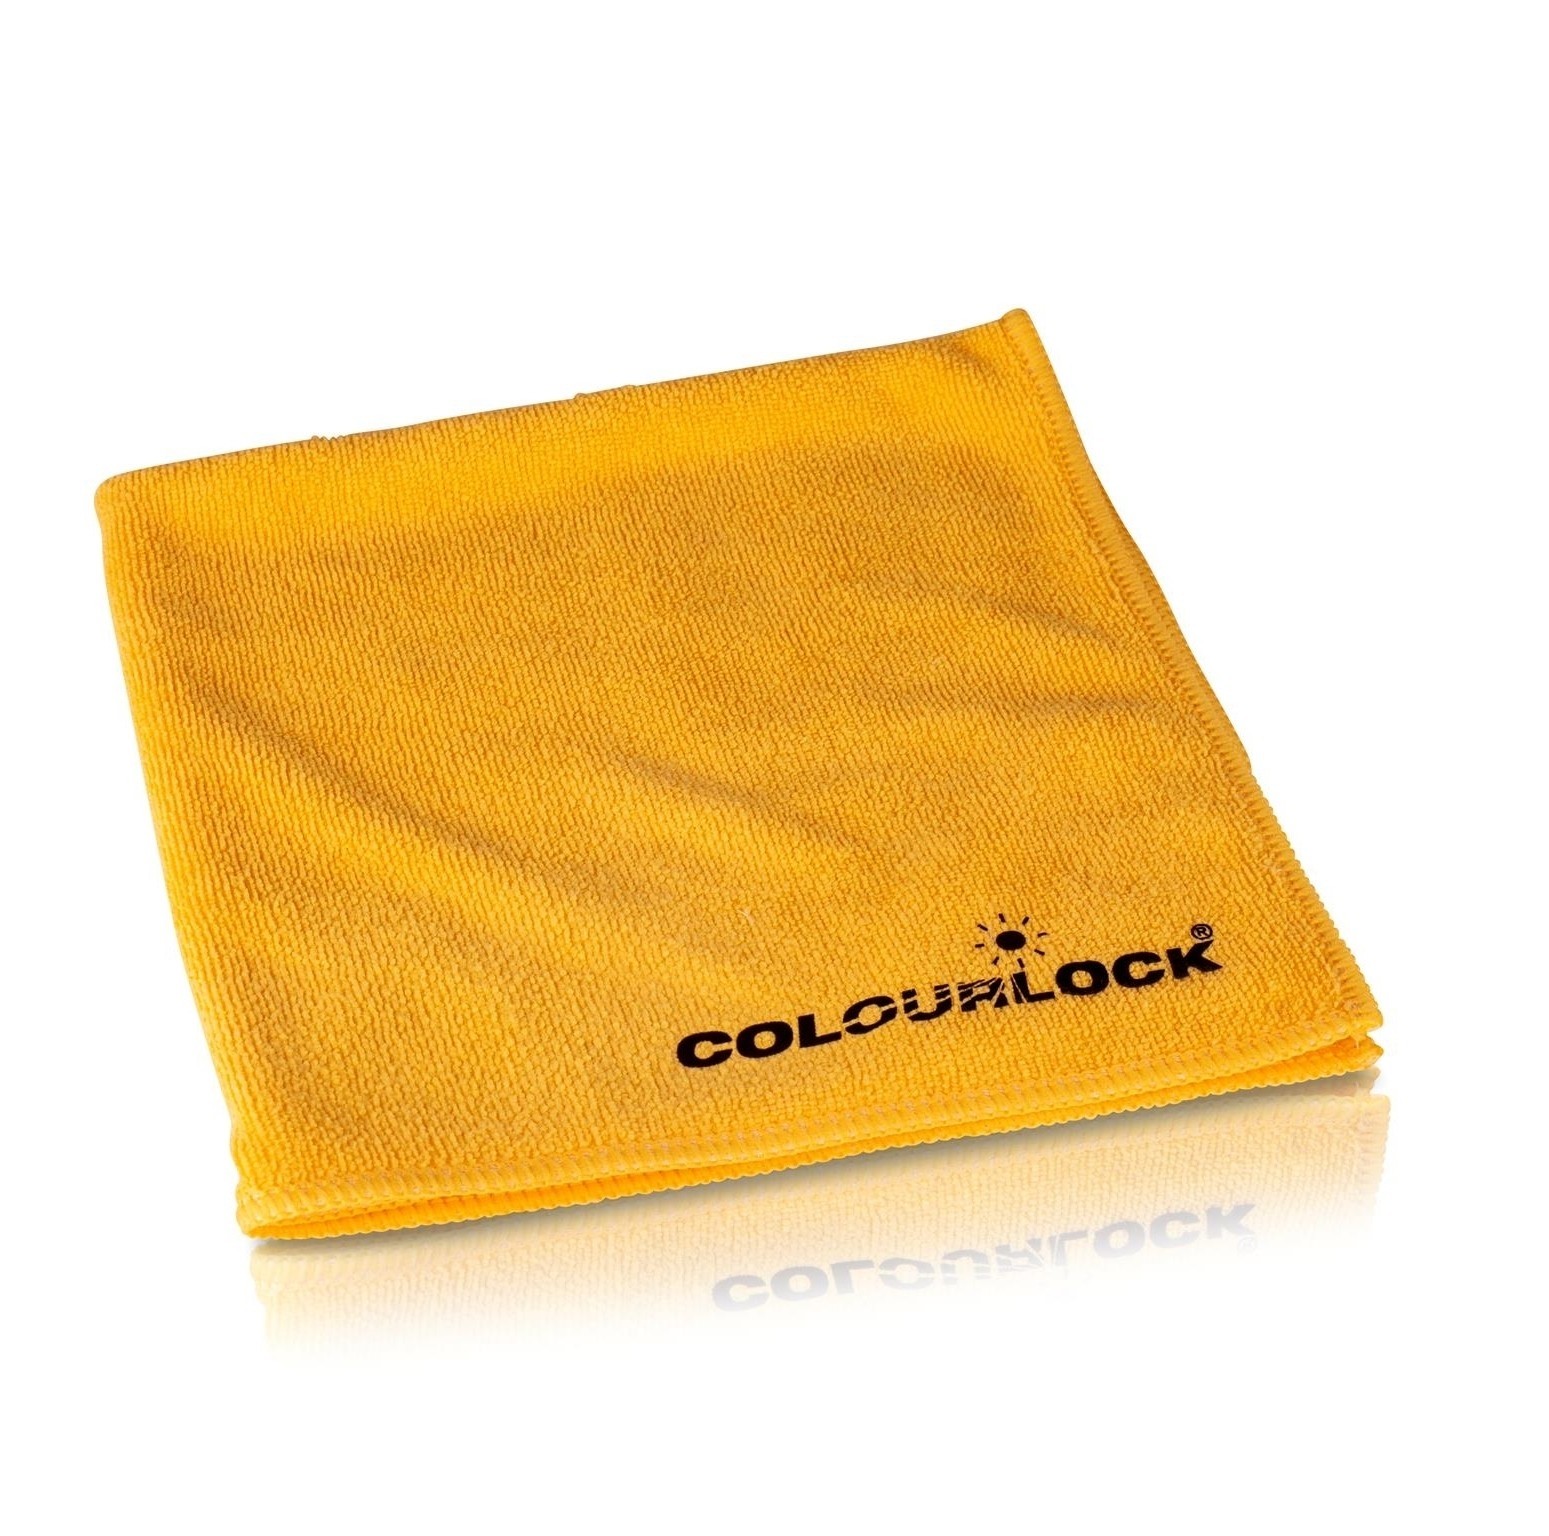 COLOURLOCK Microvezeldoek 40x40 cm, geel